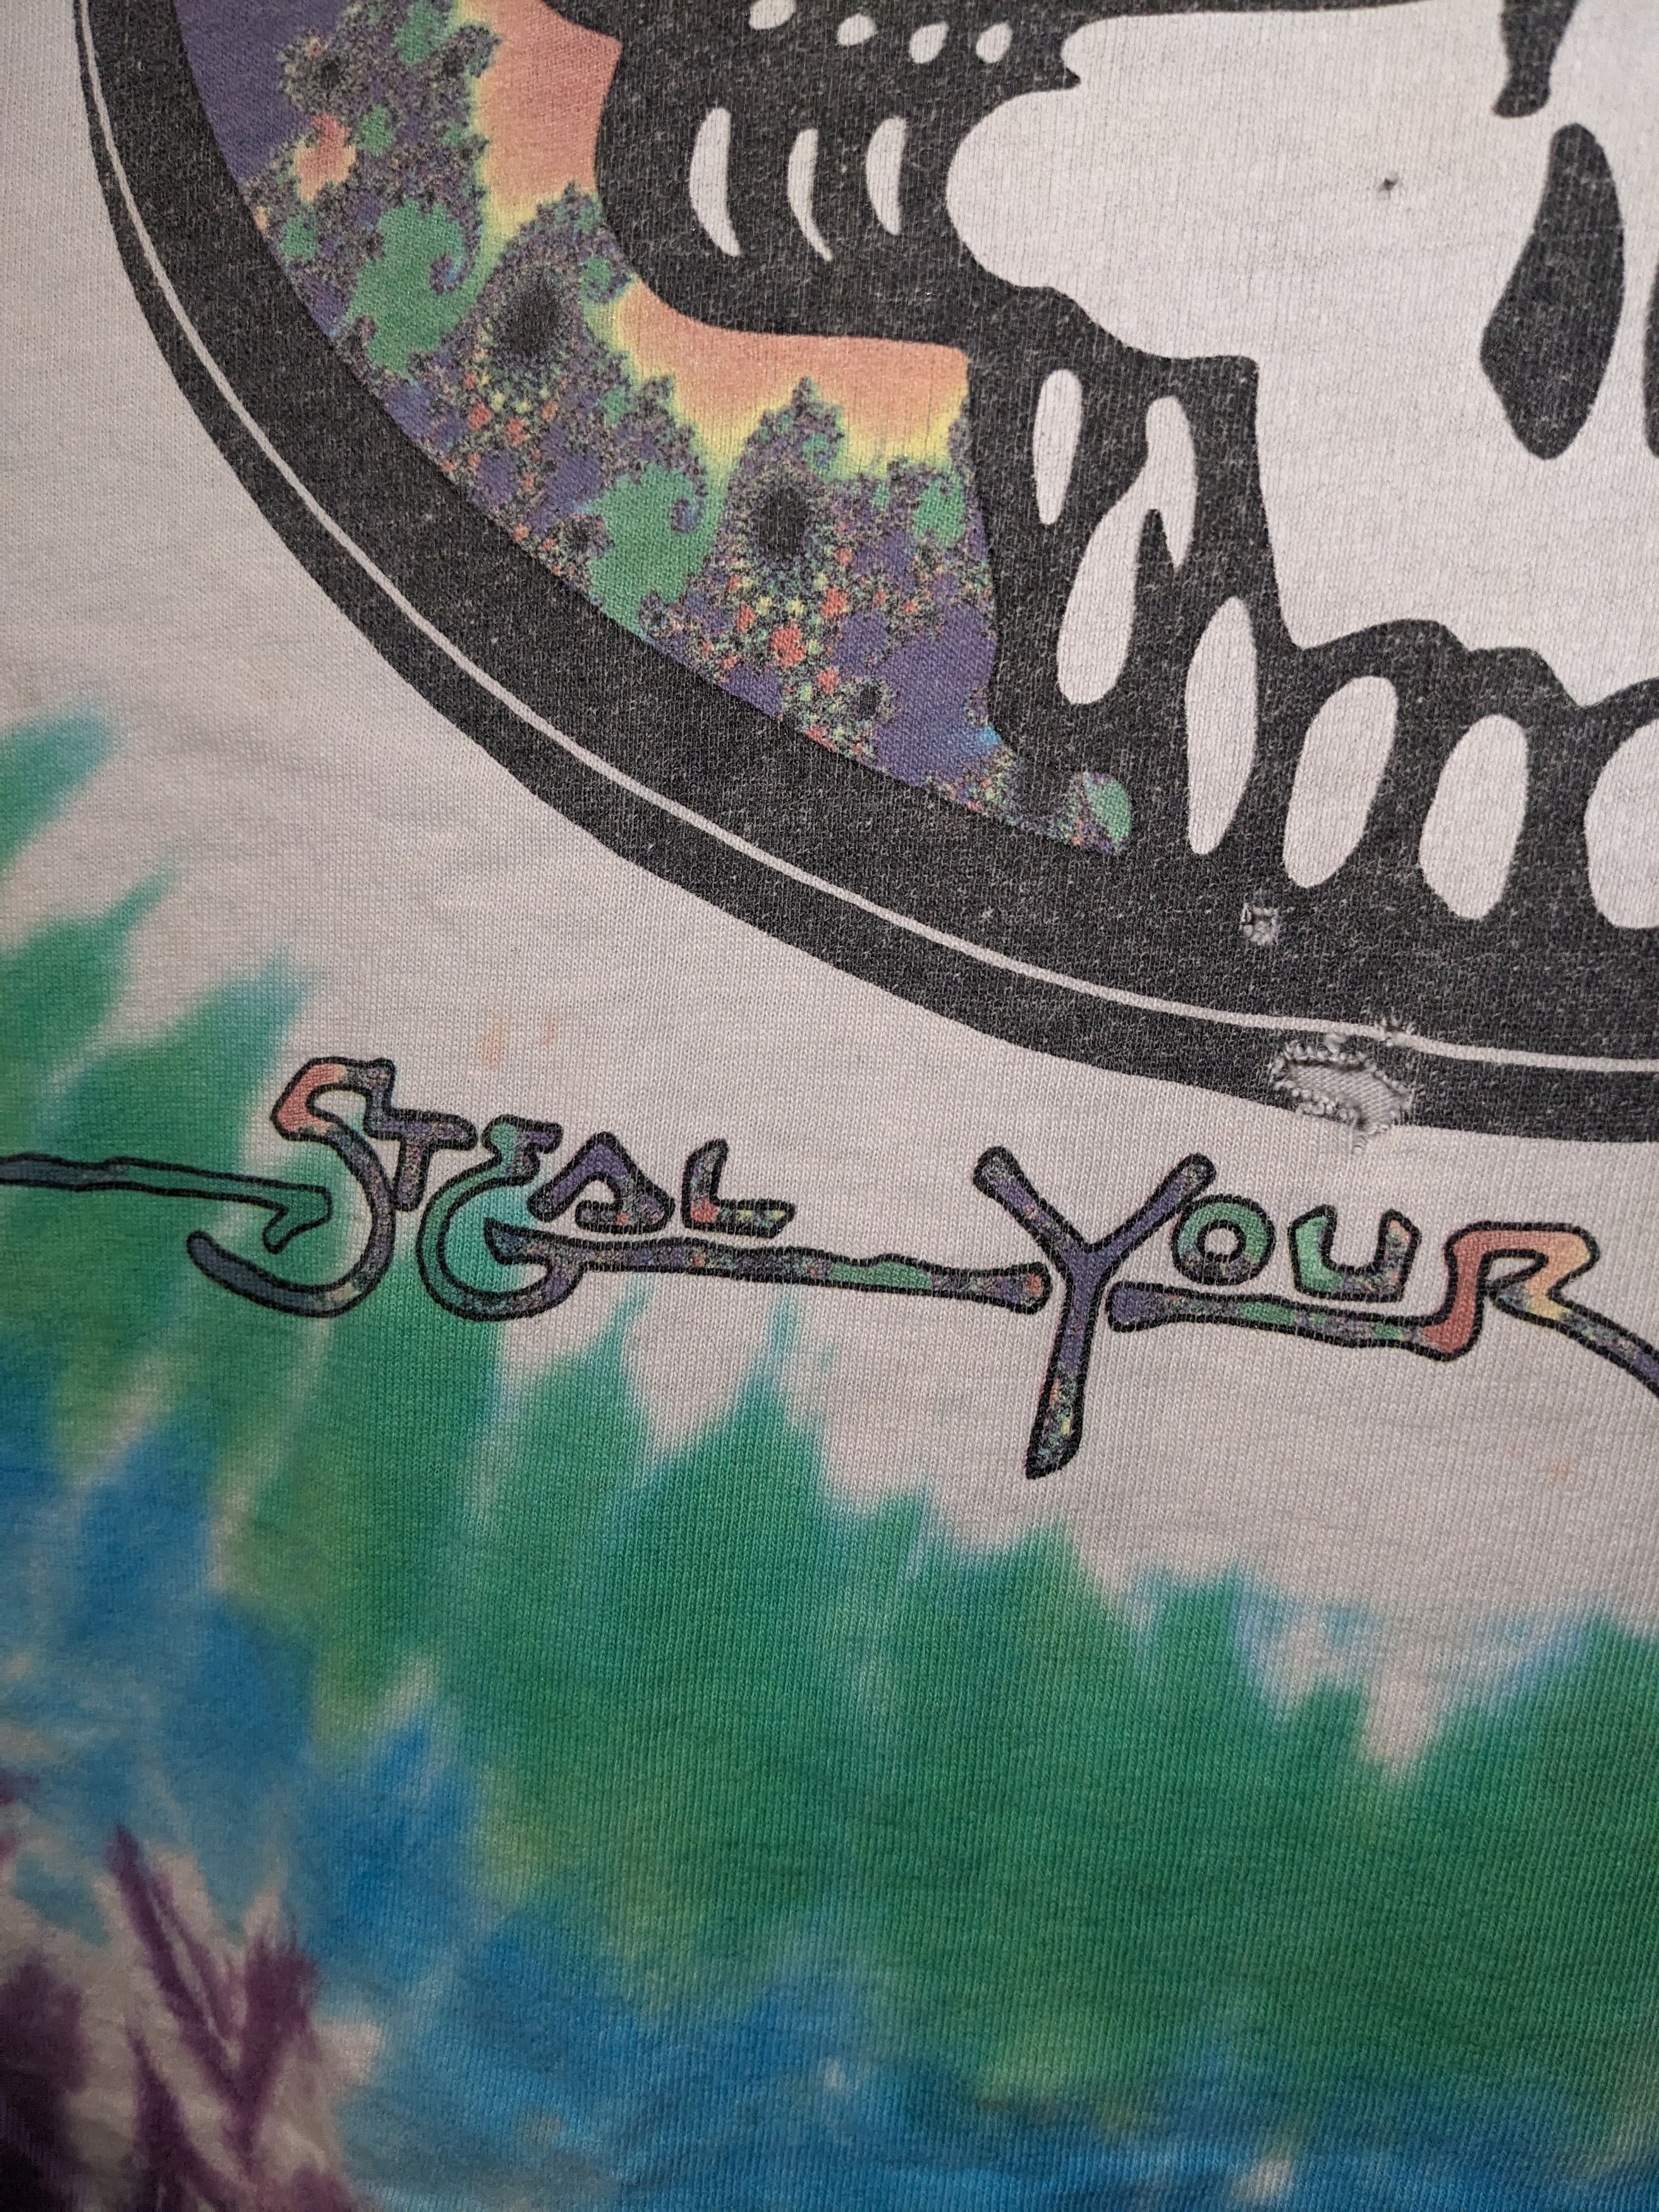 Vintage Vintage 1993 Grateful Dead Steal Your Fractal XL T-Shirt Size US XL / EU 56 / 4 - 10 Thumbnail